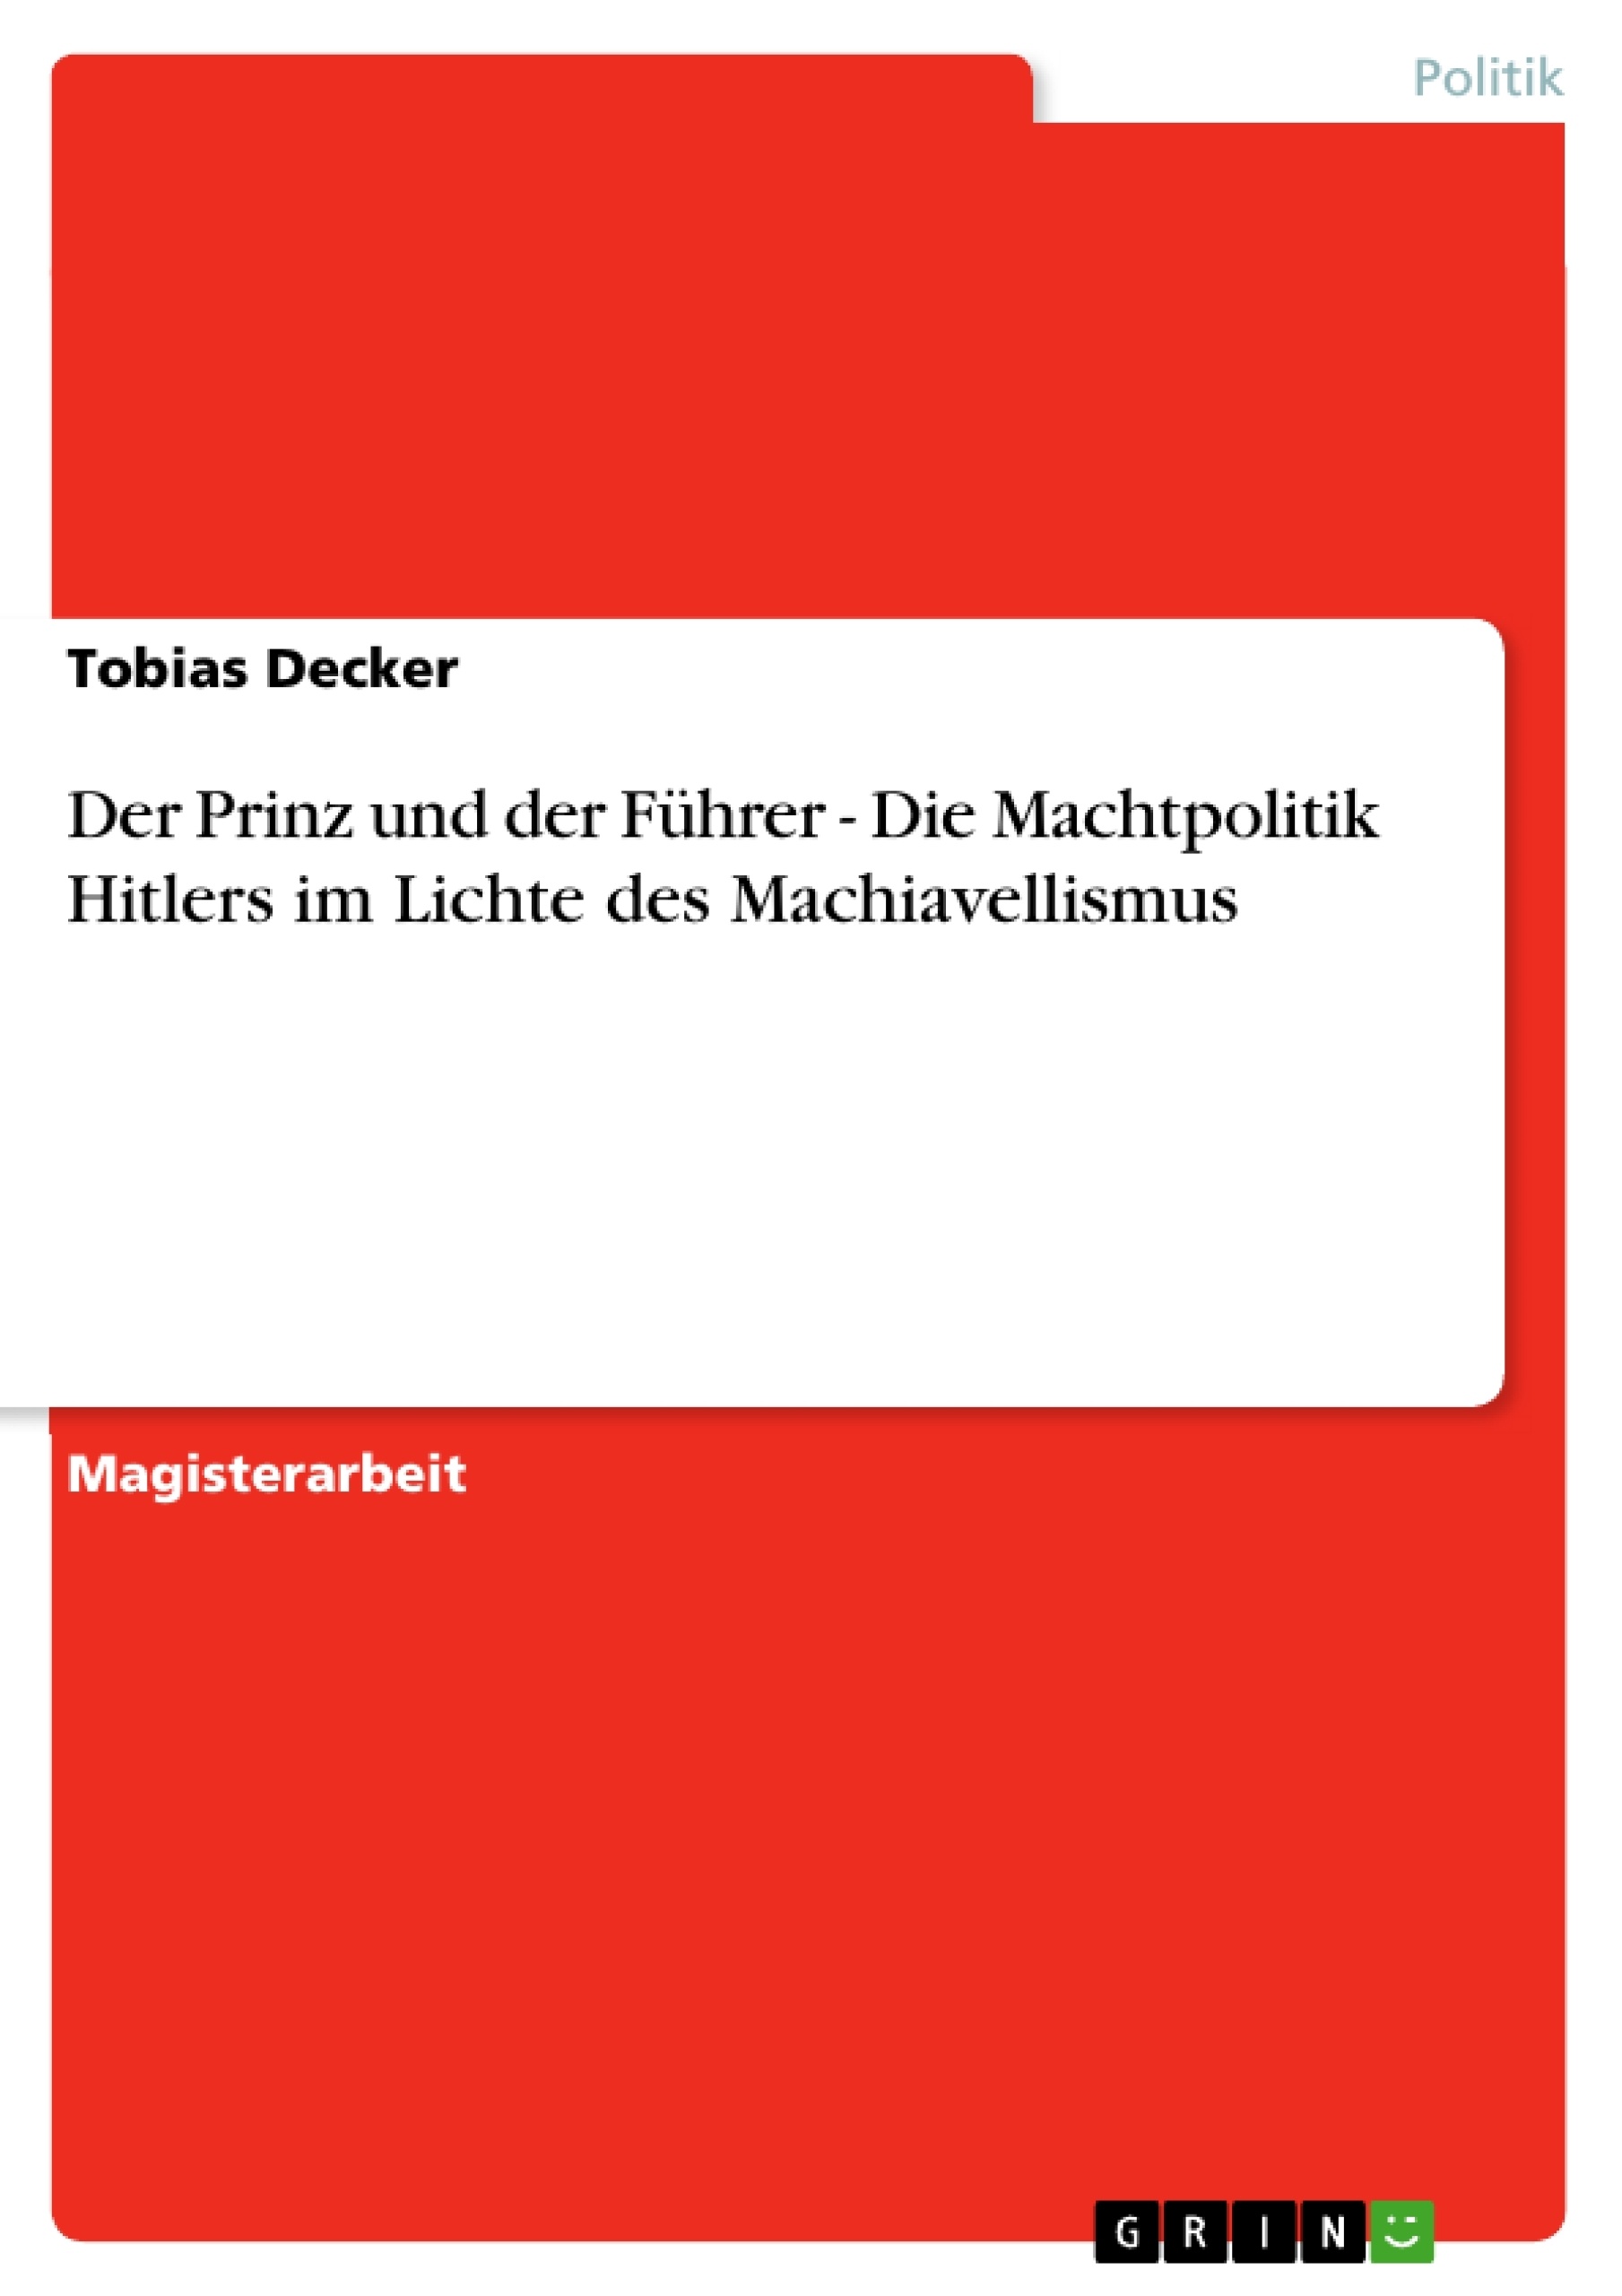 Título: Der Prinz und der Führer - Die Machtpolitik Hitlers im Lichte des Machiavellismus